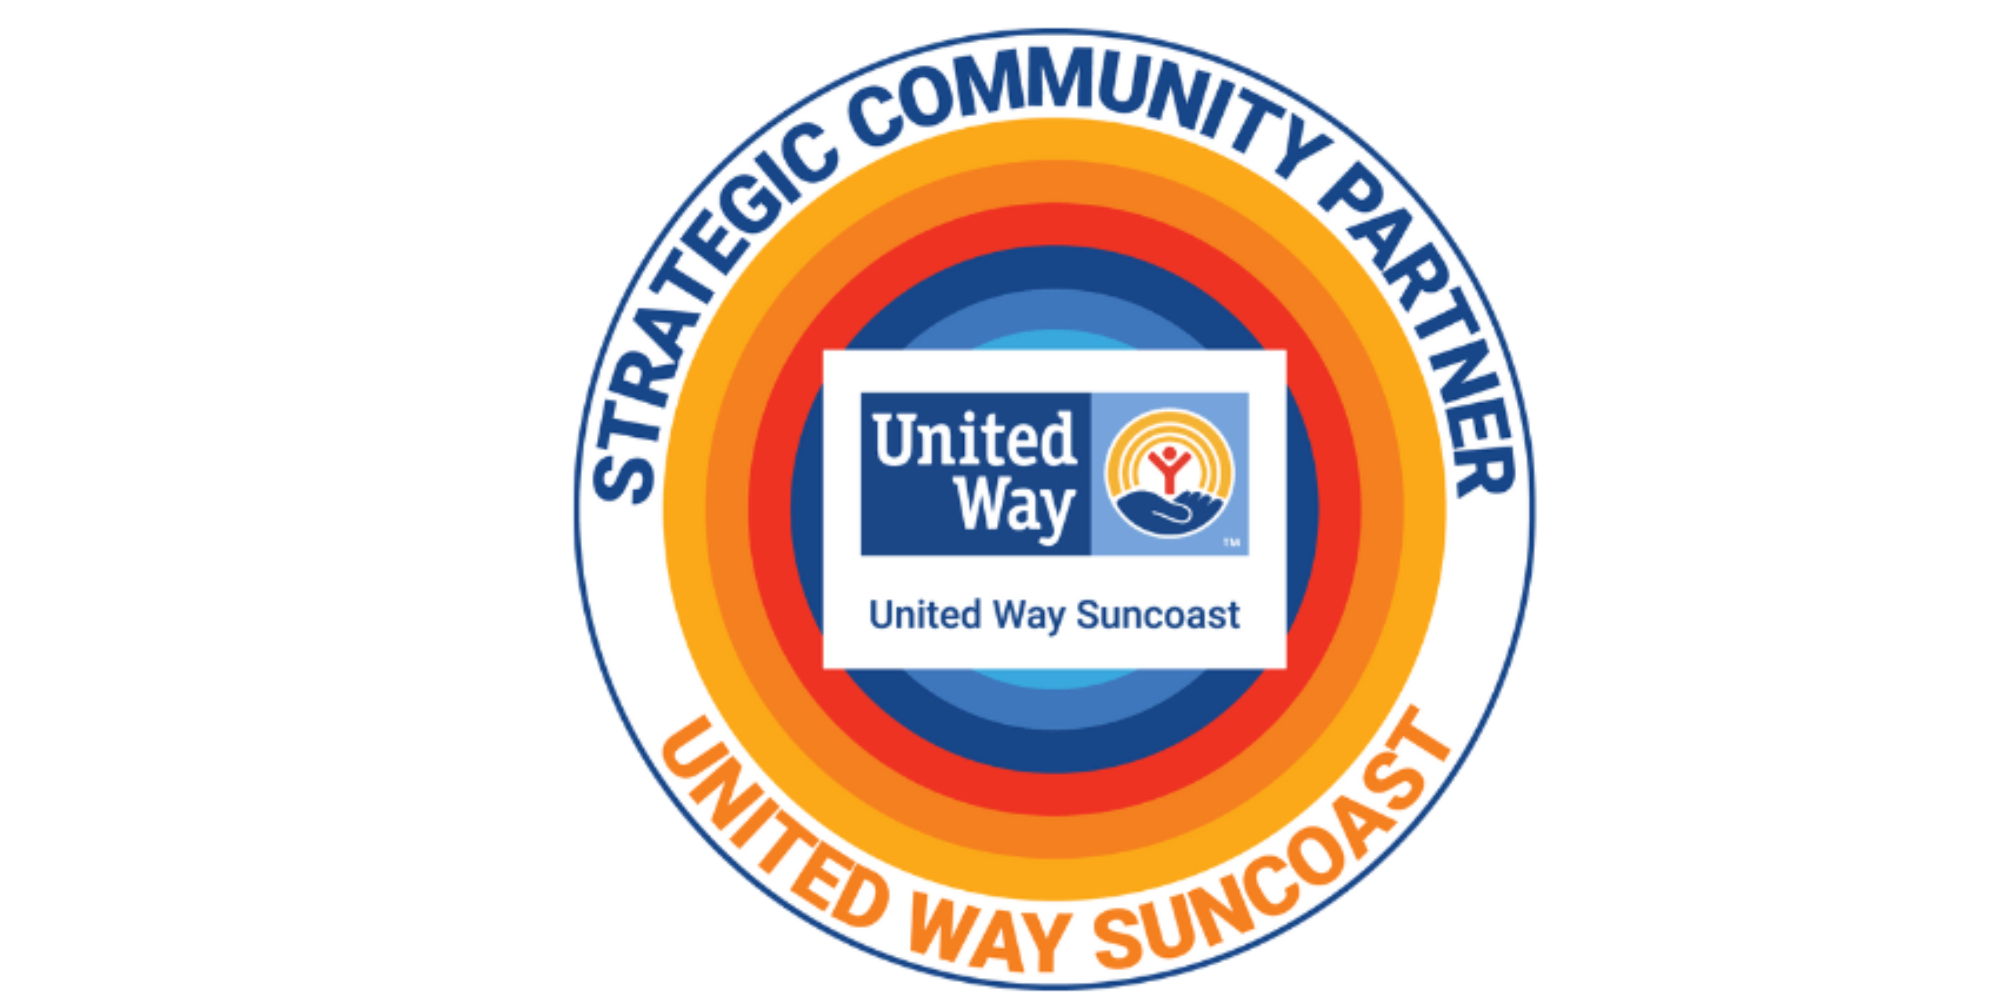 United Way Suncoast Strategic Partner